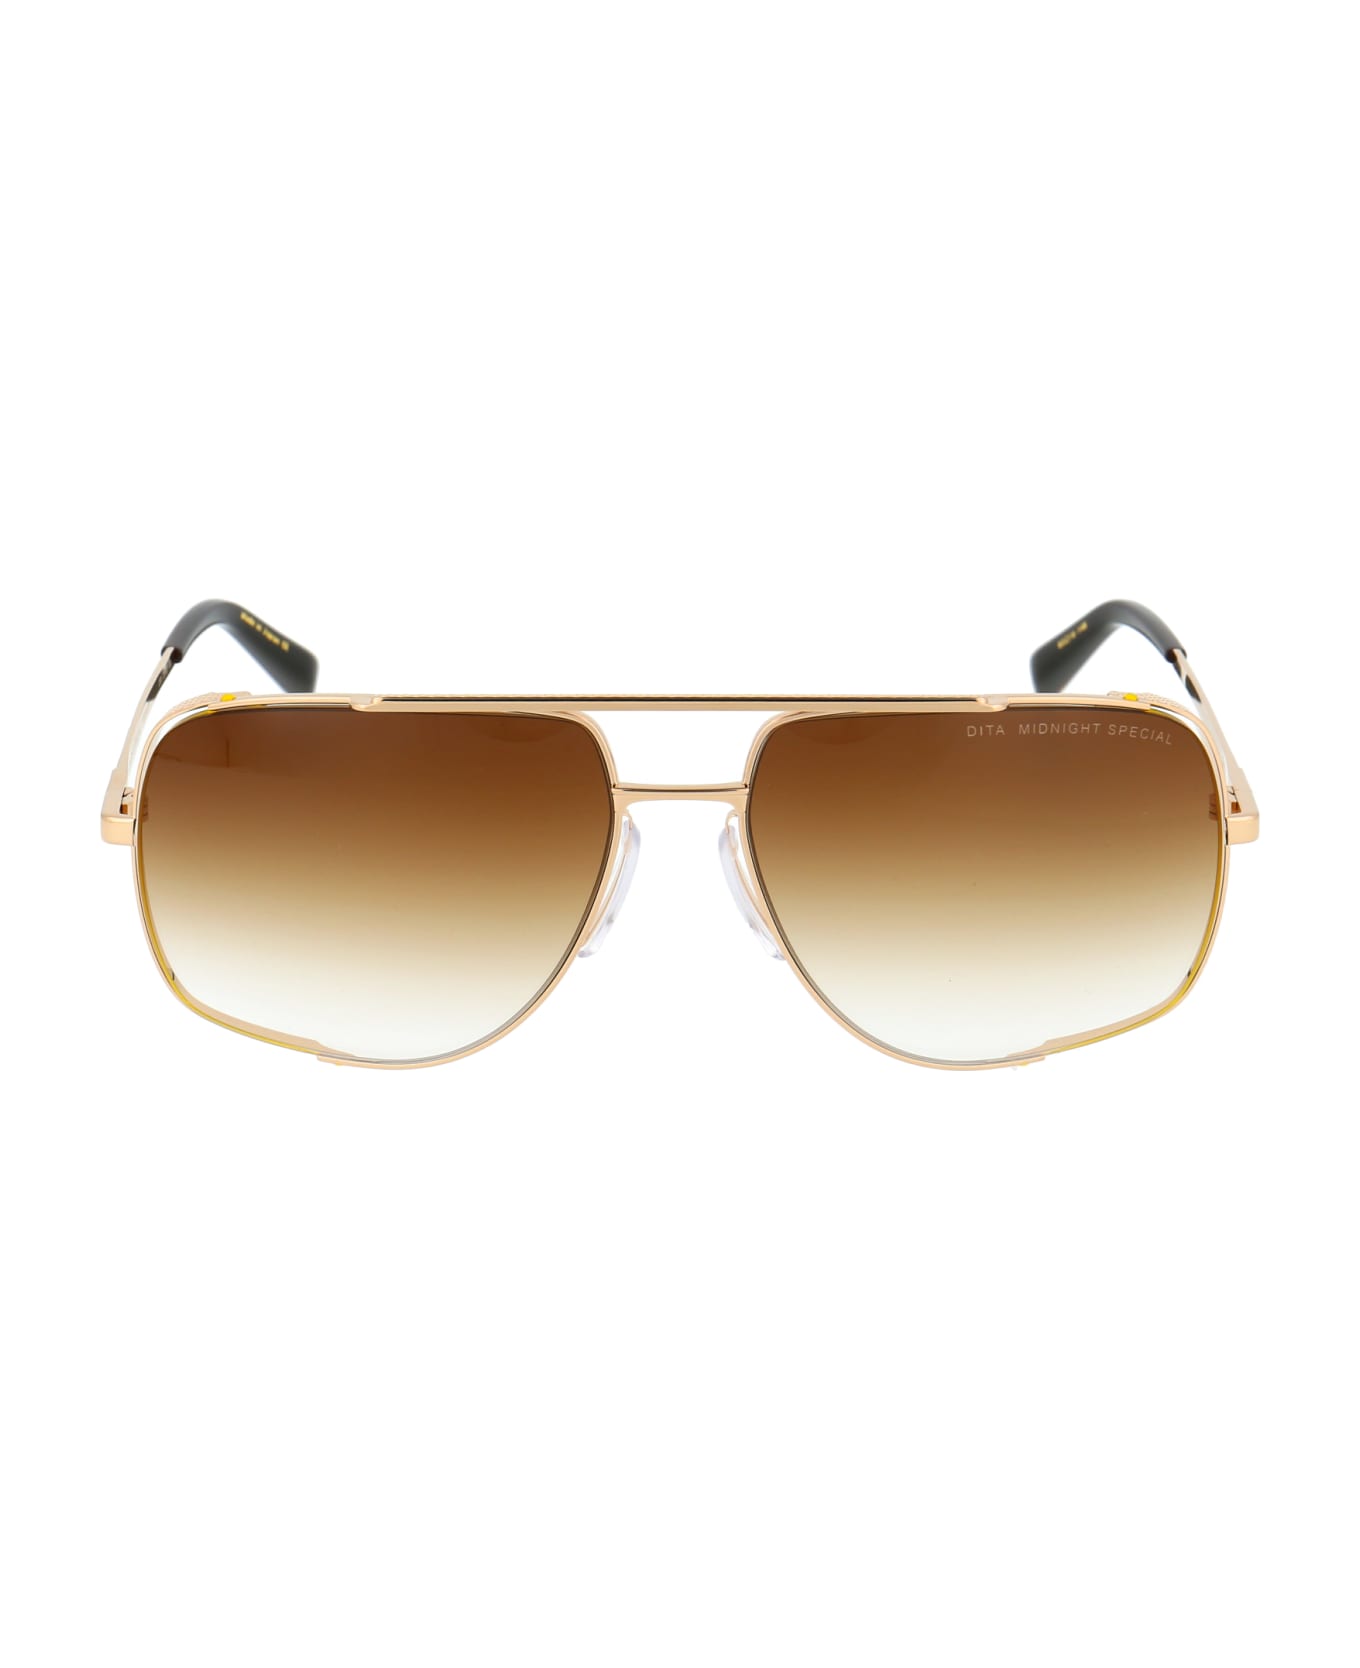 Dita Midnight Special Sunglasses - 12K Gold